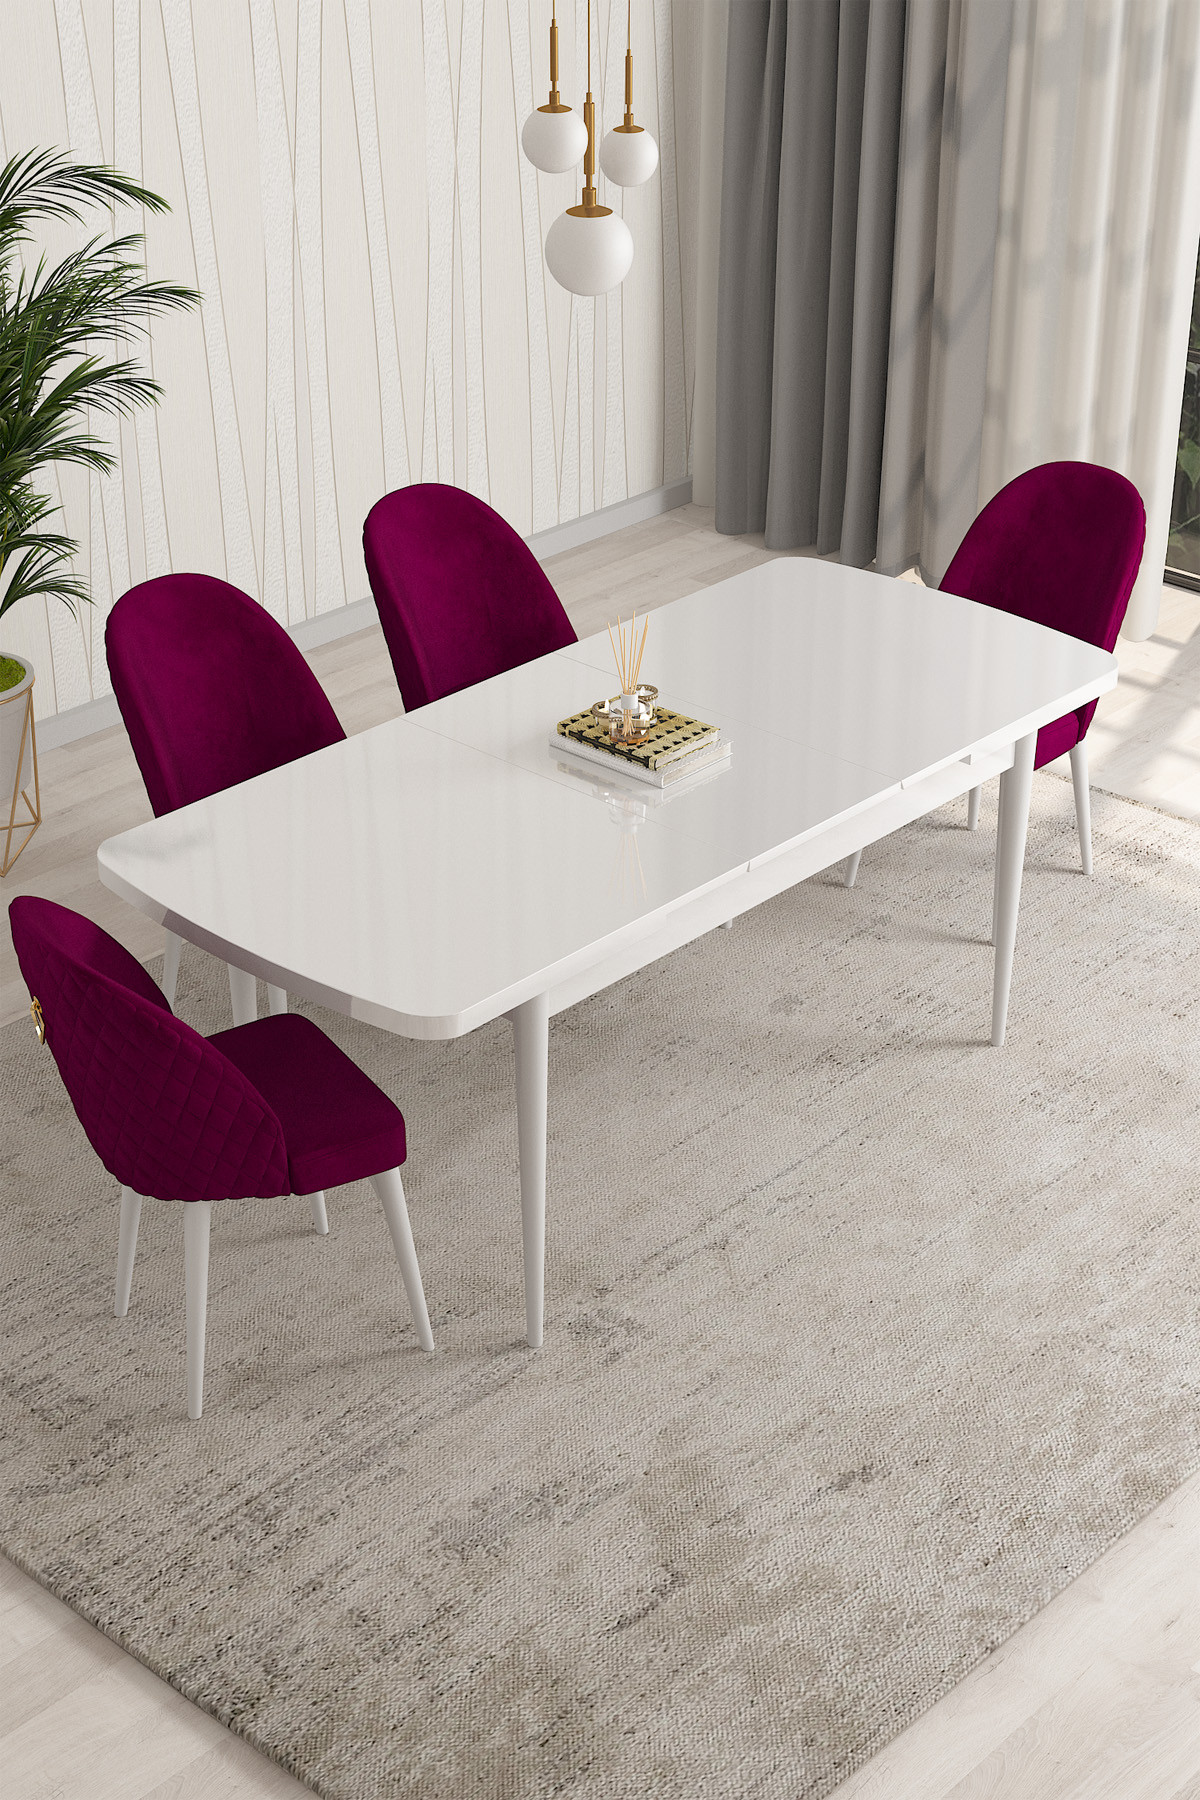 Rovena Modica Beyaz 80x132 Açılabilir Yemek Masası Takımı 4 Adet Sandalye